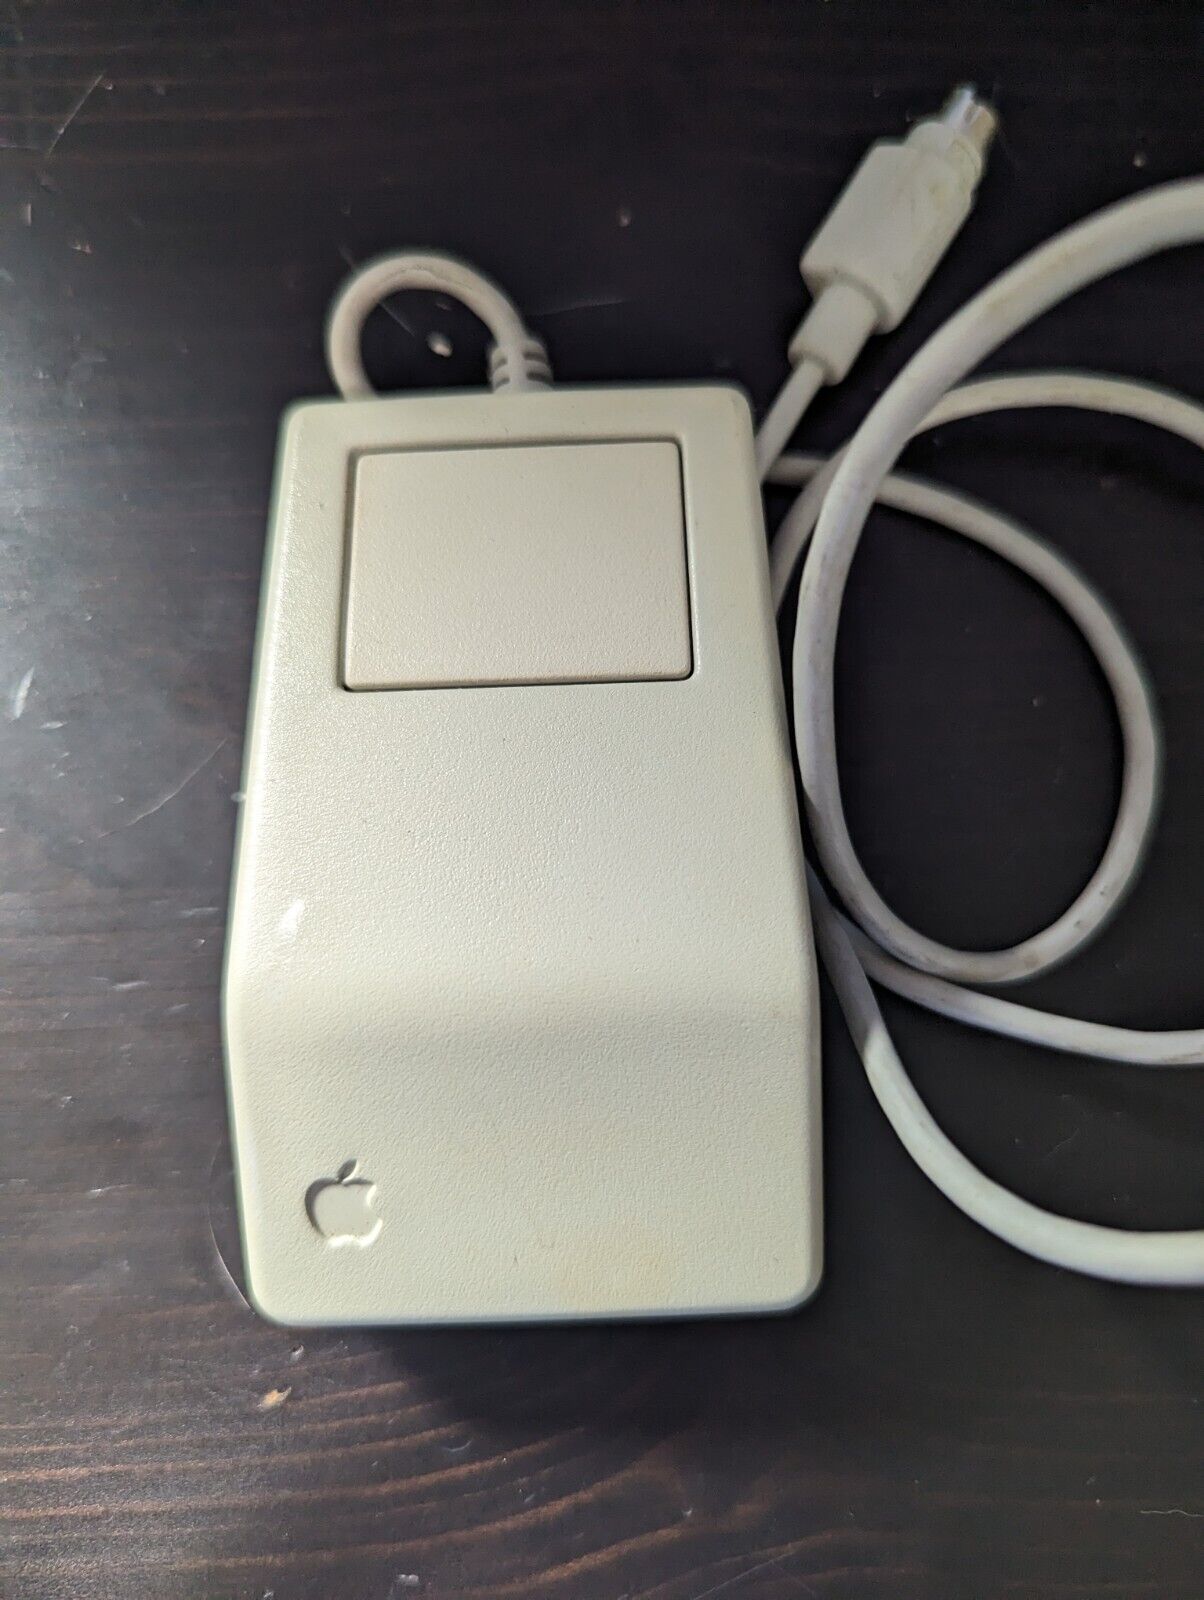 Apple Desktop Bus Mouse G5431